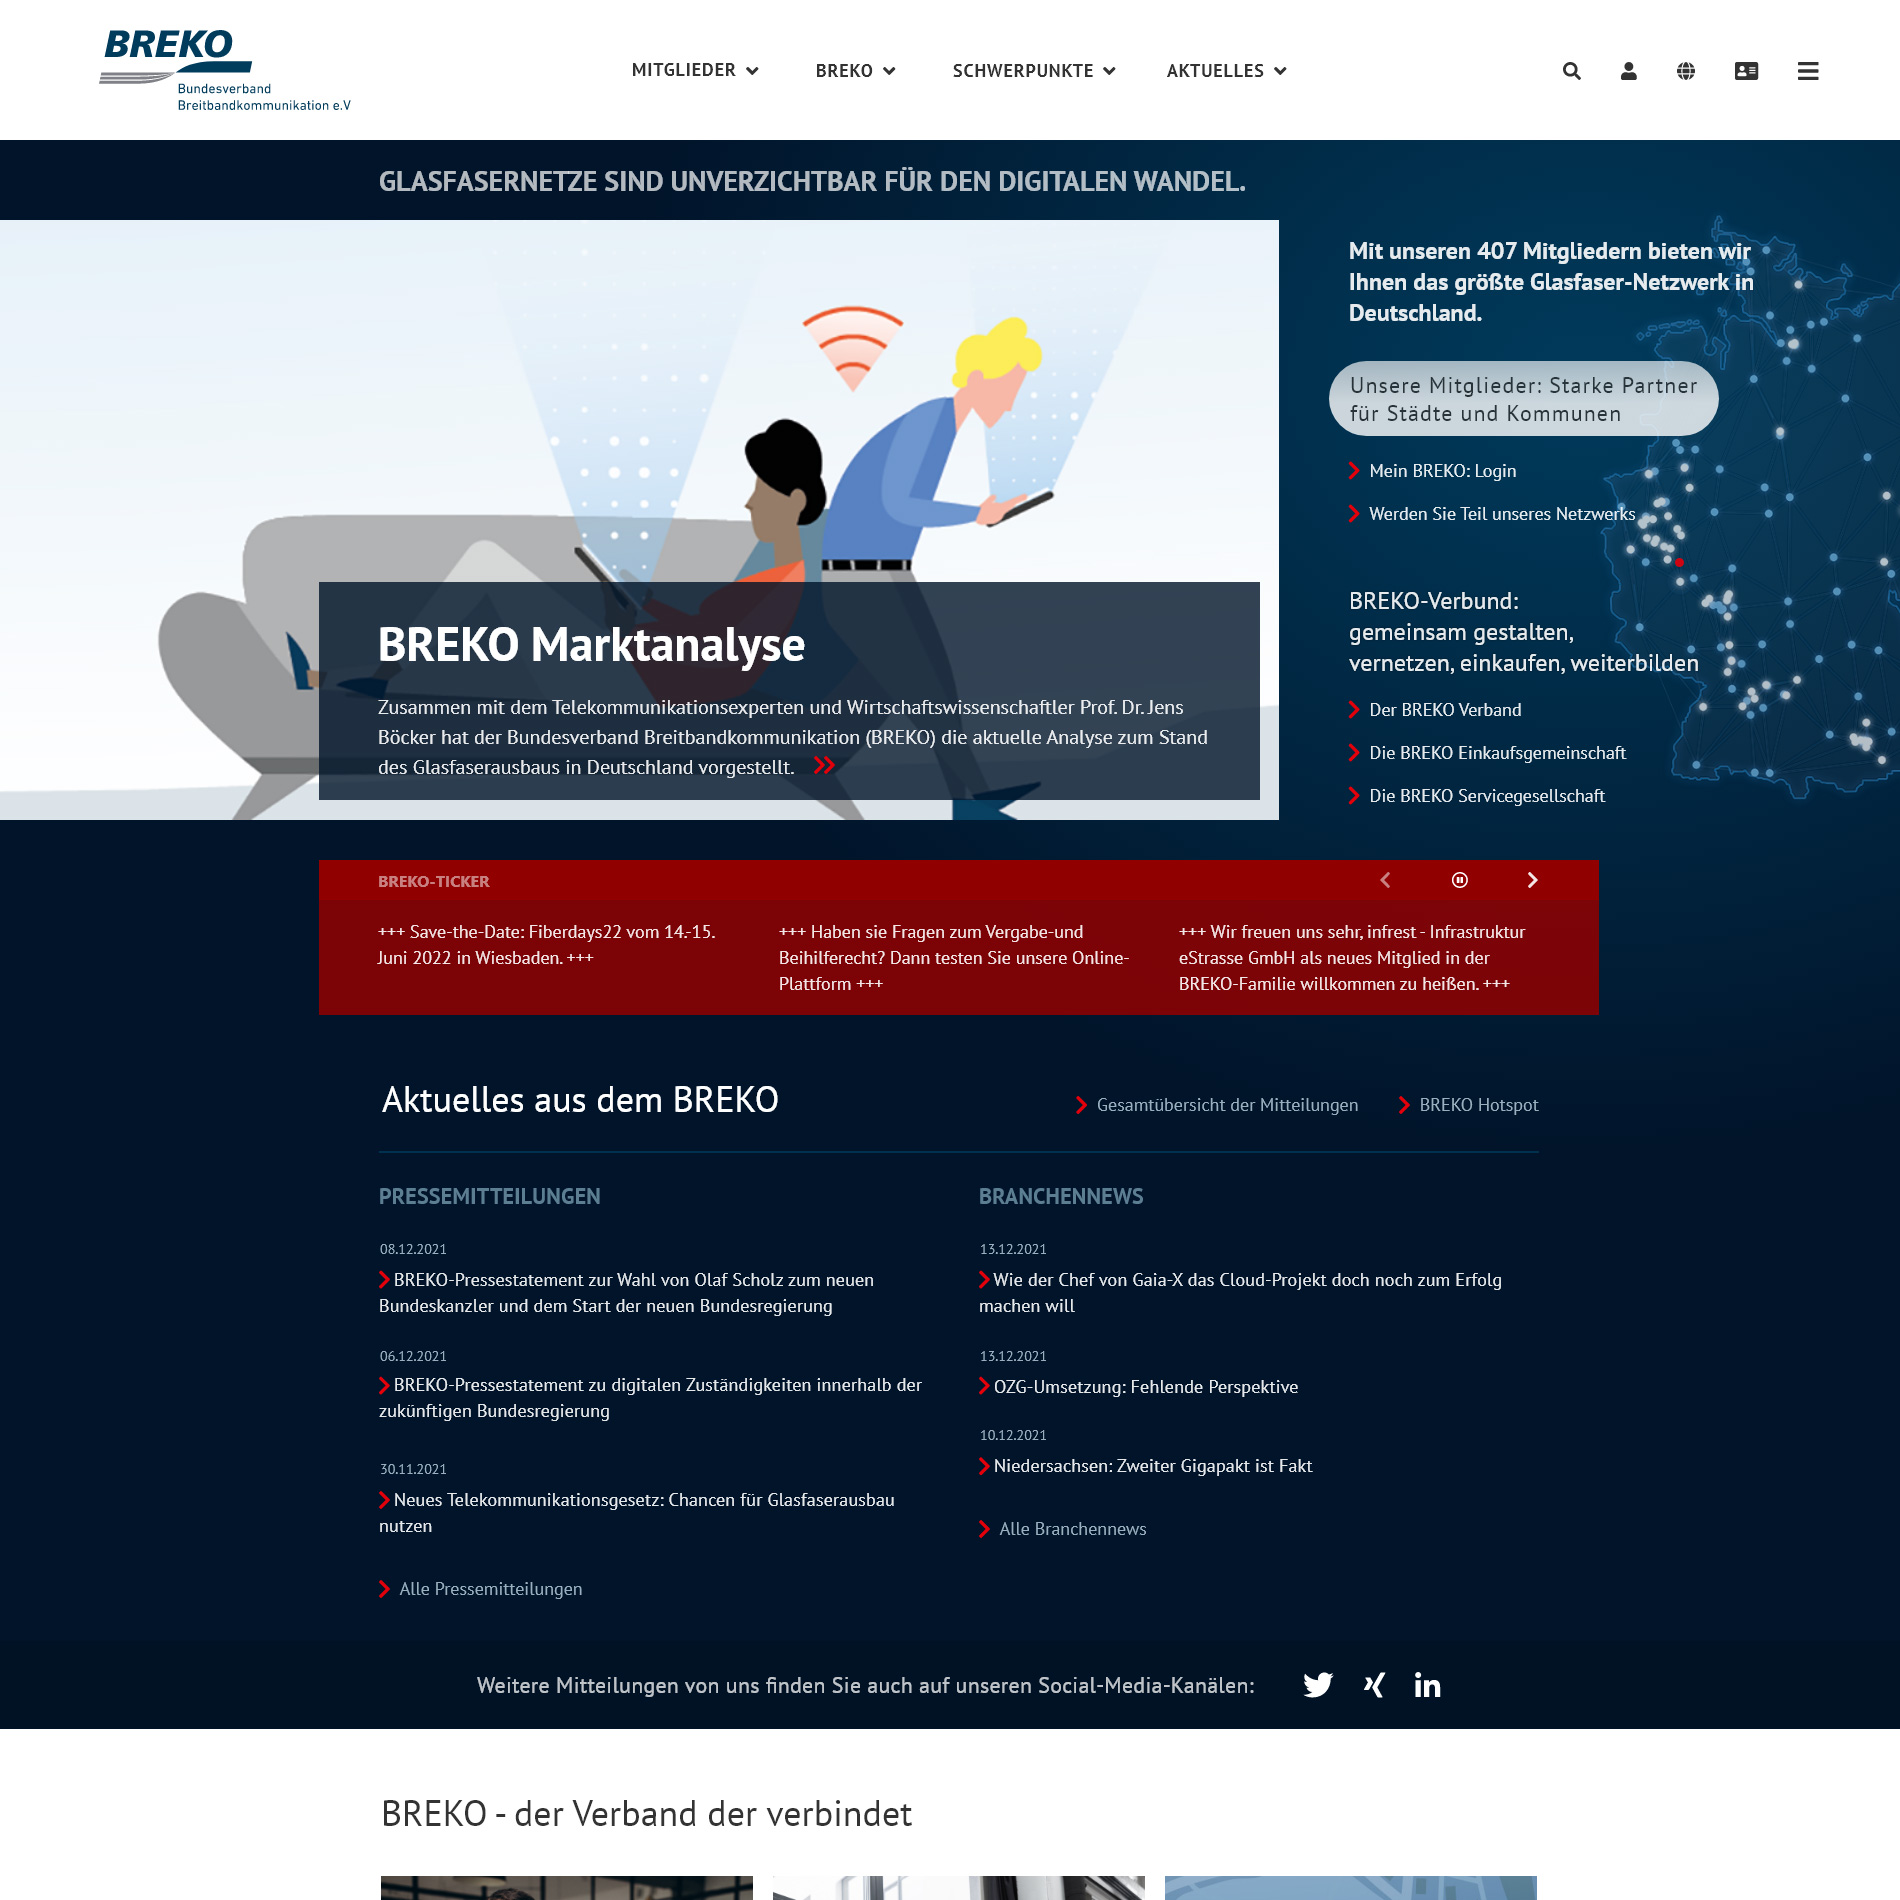 Startseite brekoverband.de (Entwurf 2022)